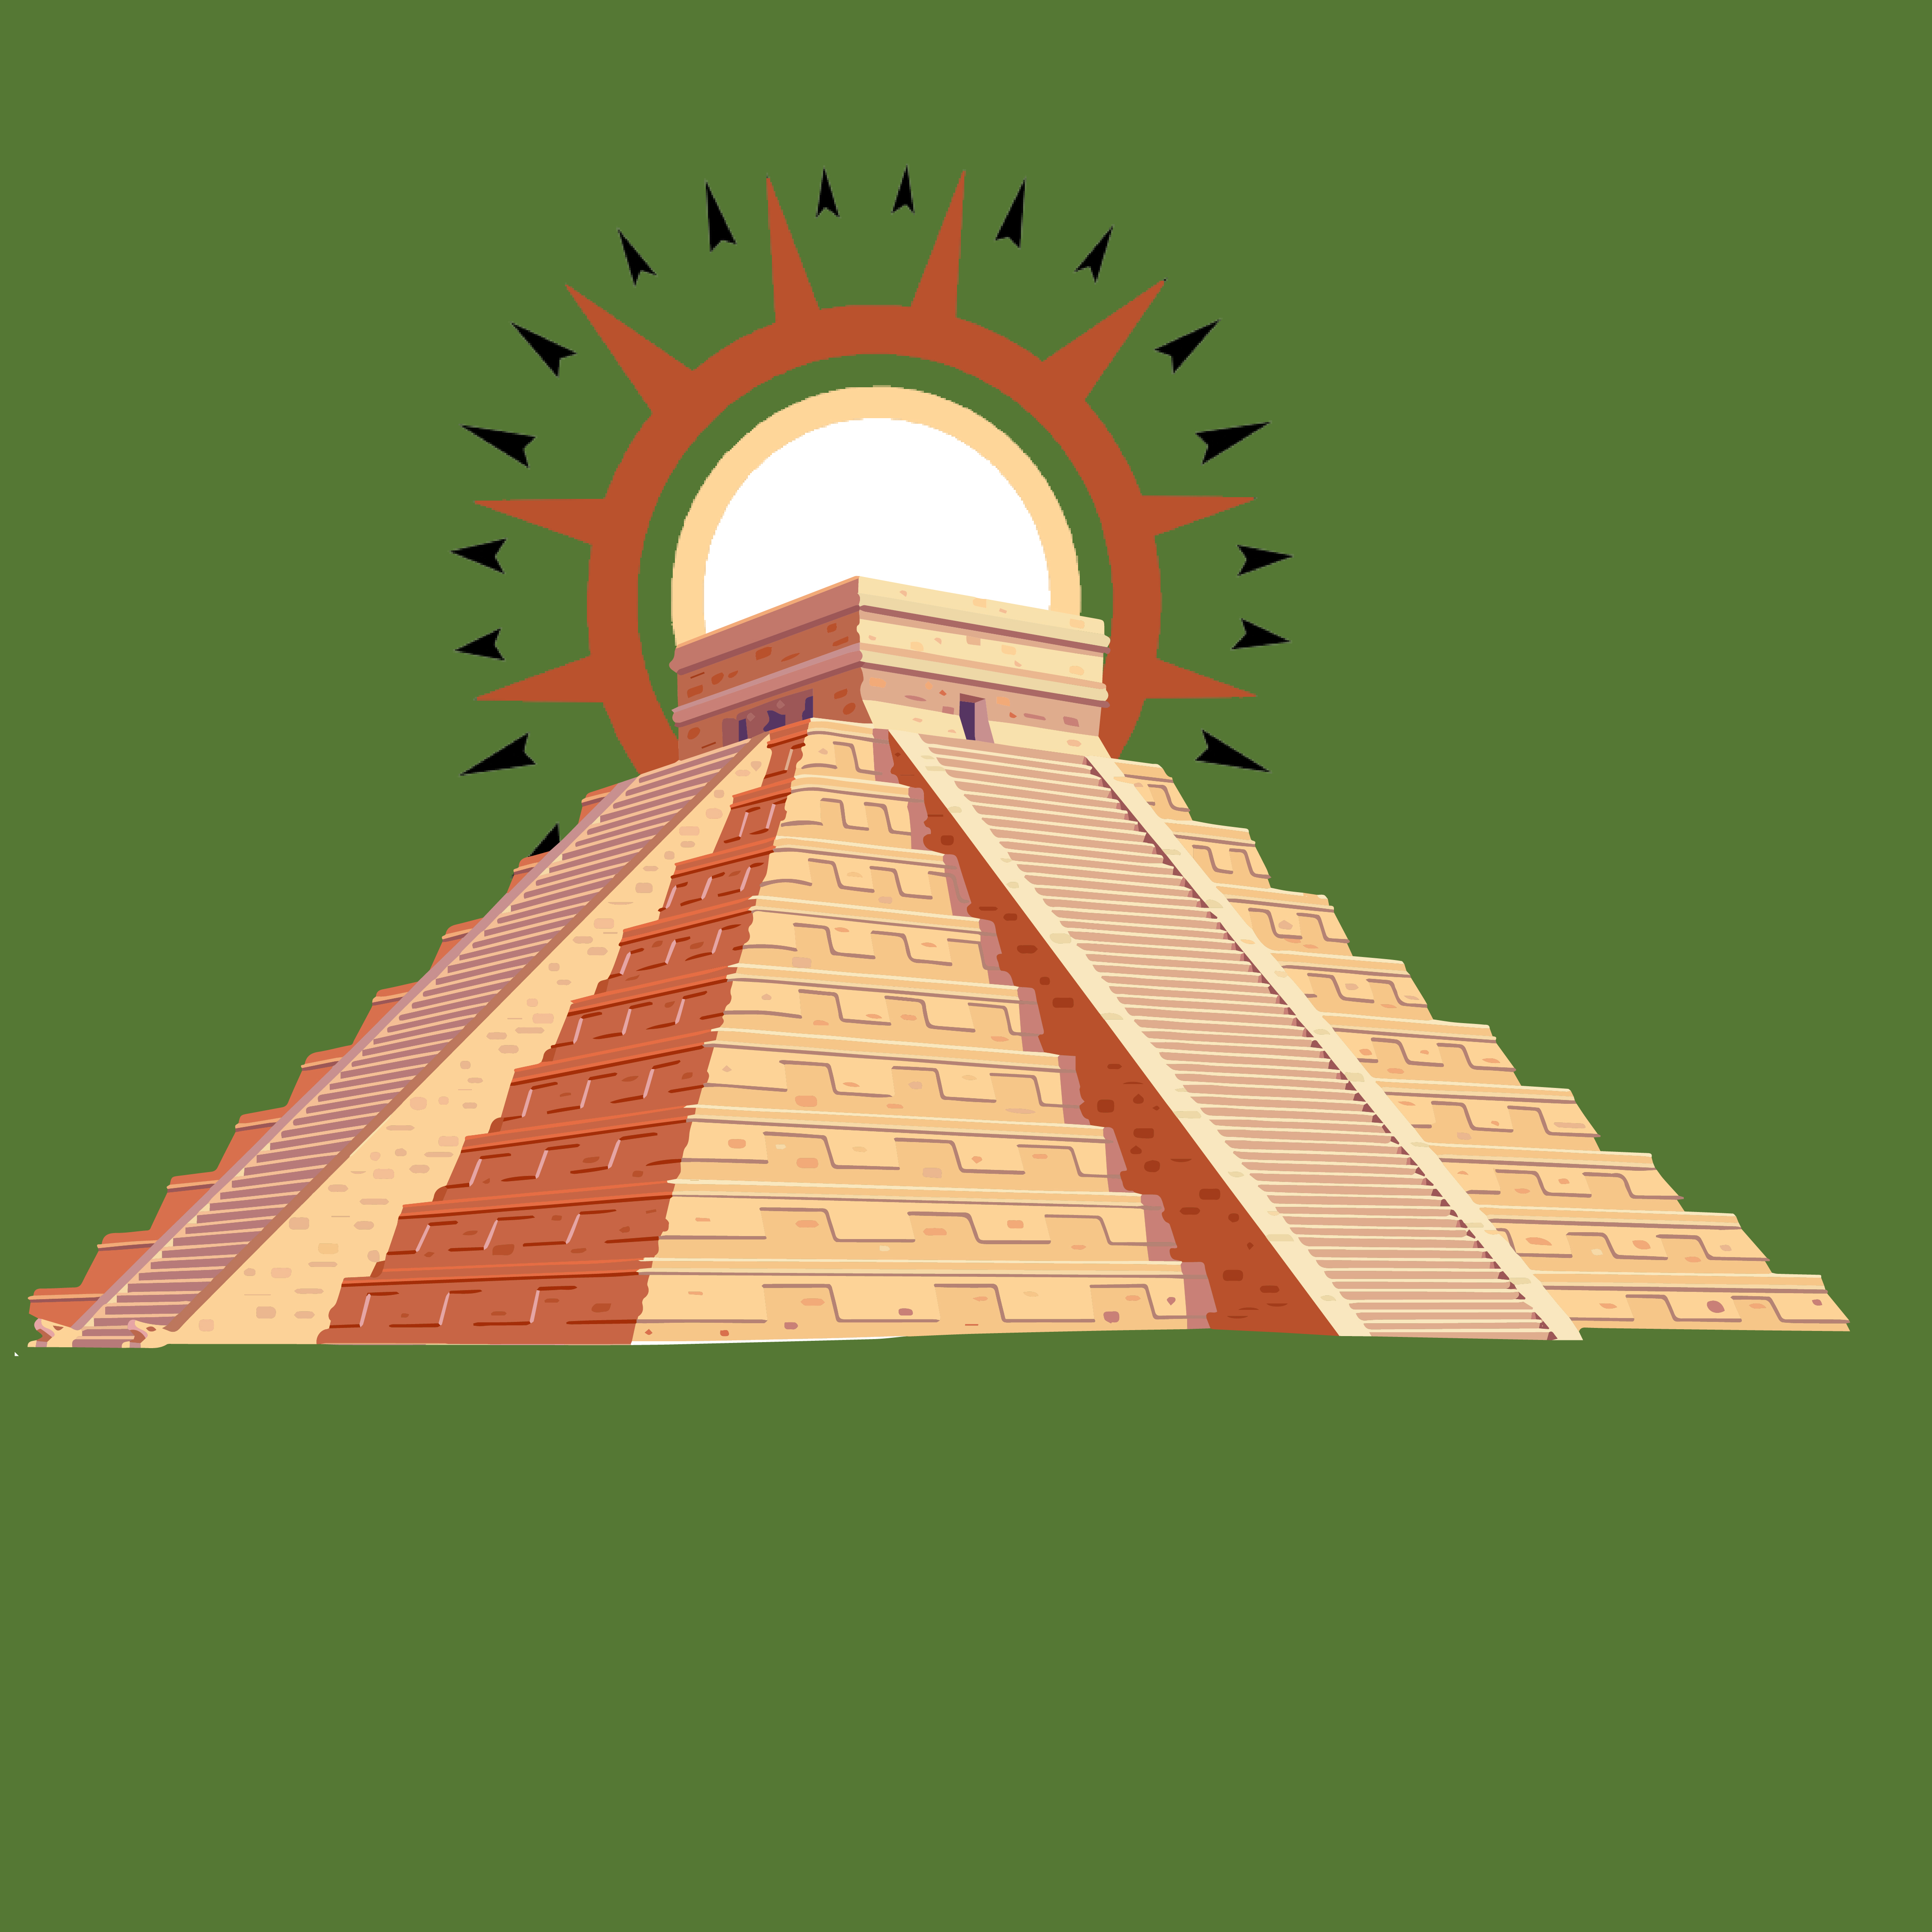 GPG (Great Pyramid of Giza)